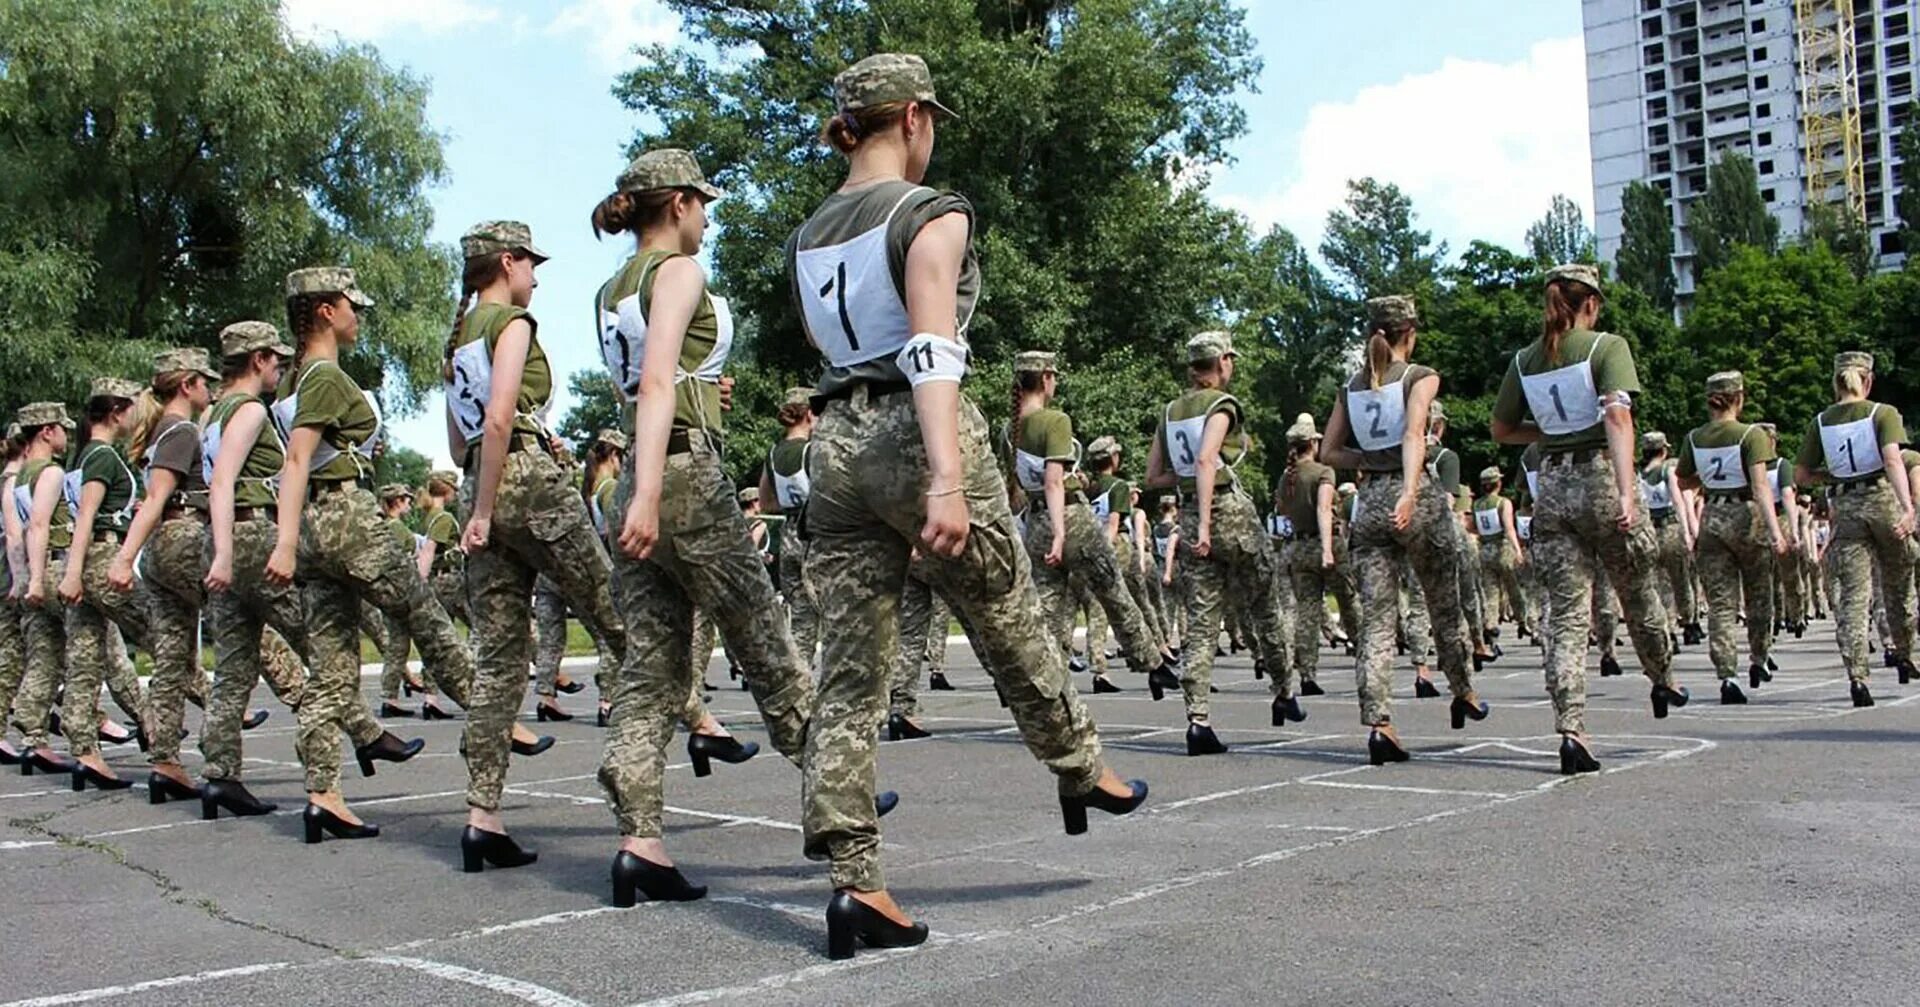 Женщины военнослужащие Украины. Женщины военные на параде. Украинские женщины военнослужащие на каблуках. Украинские женщины военнослужащие на параде. Парад девушек видео